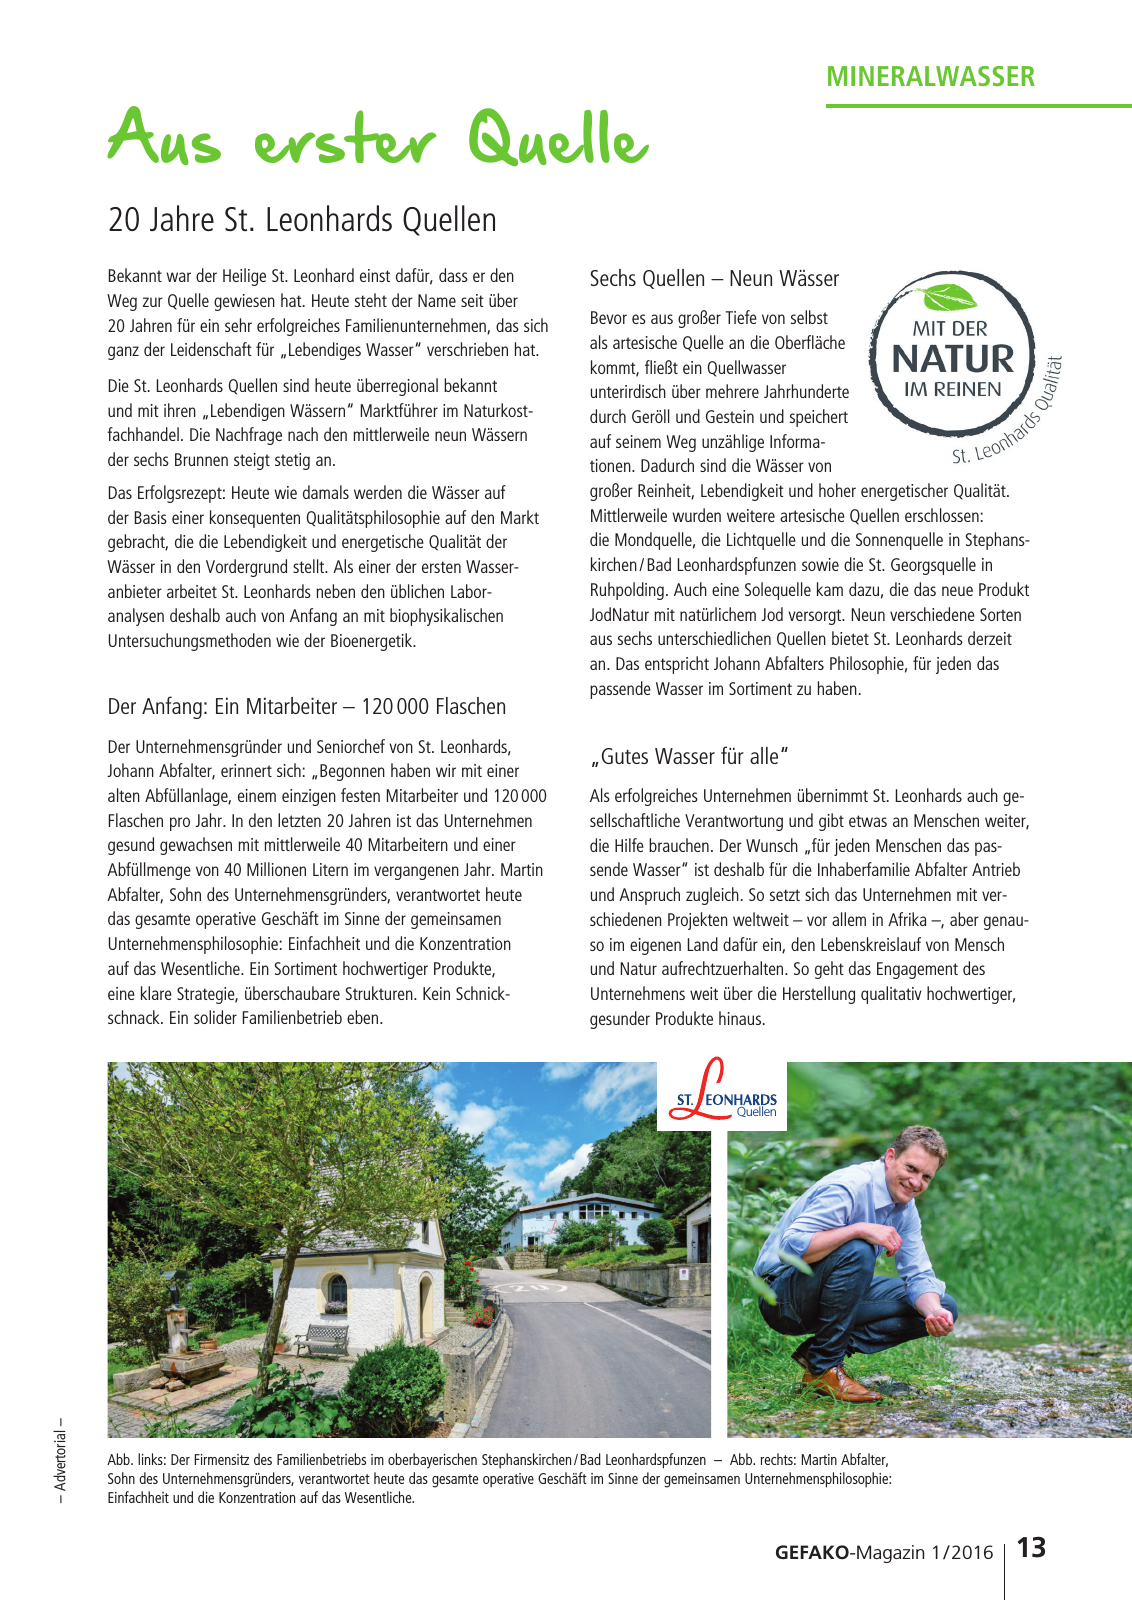 Vorschau GEFAKO Kundenmagazin 2016/1 Seite 13